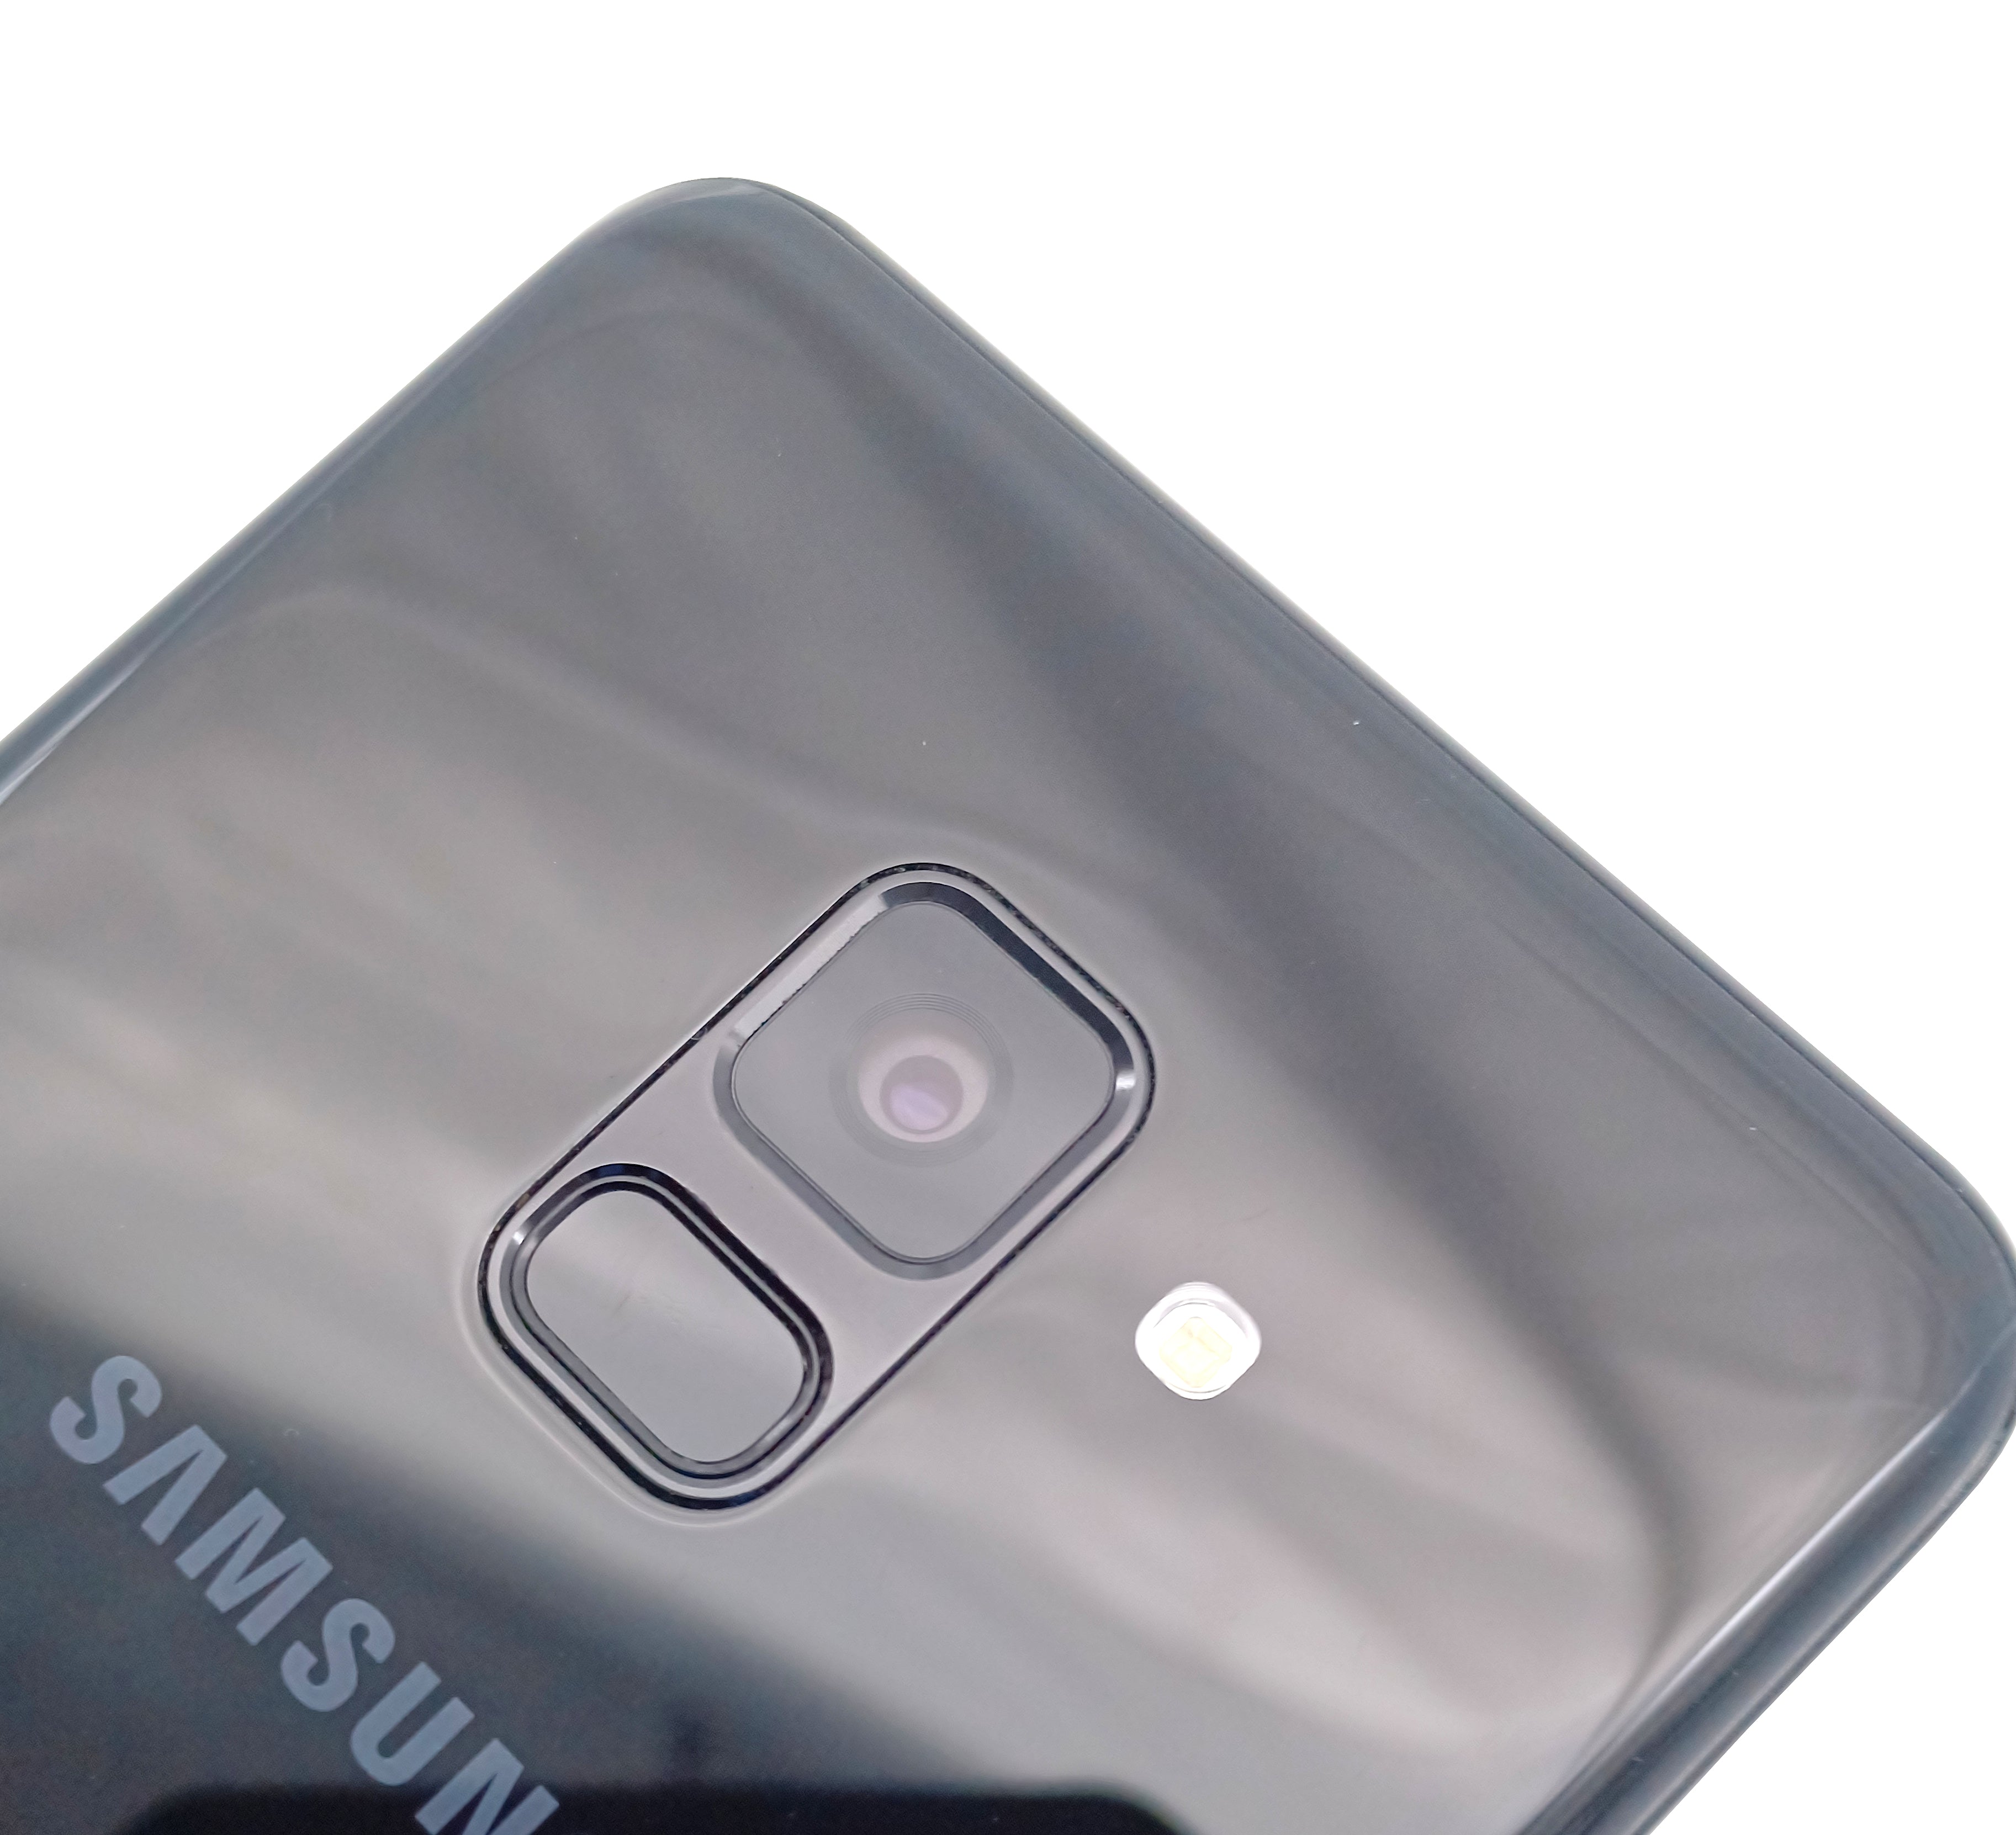 Samsung Galaxy A8 (2018) Smartphone. 32GB, Network Unlocked, Black, SM-A530F